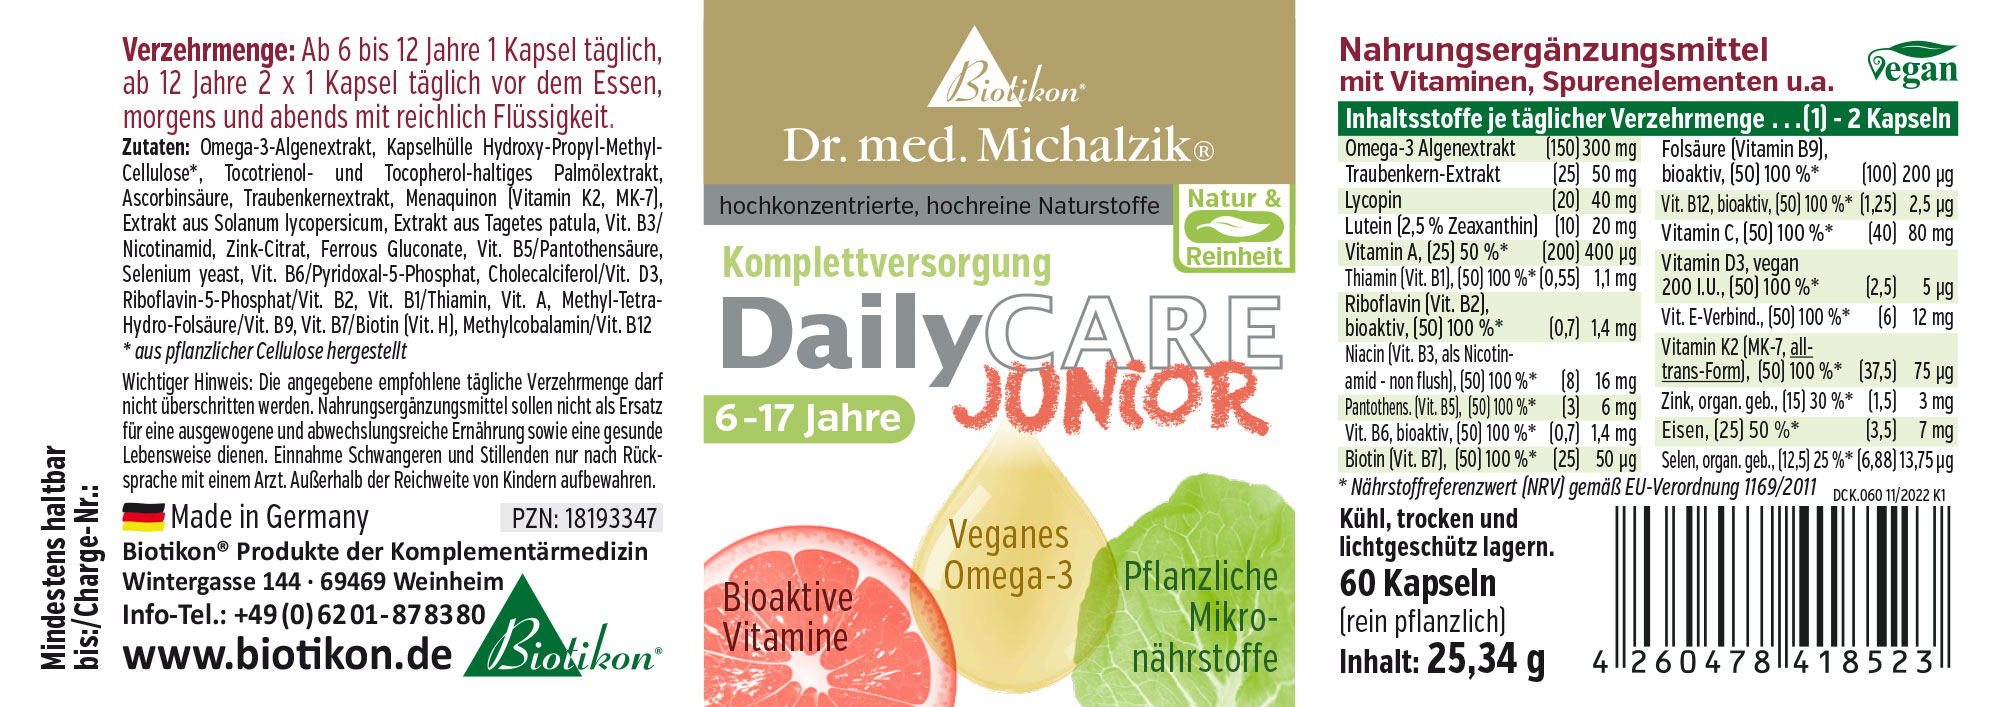 DailyCare Junior - Vitamines bioactives, végétaliens oméga-3 + oligoéléments et substances végétales de haute qualité